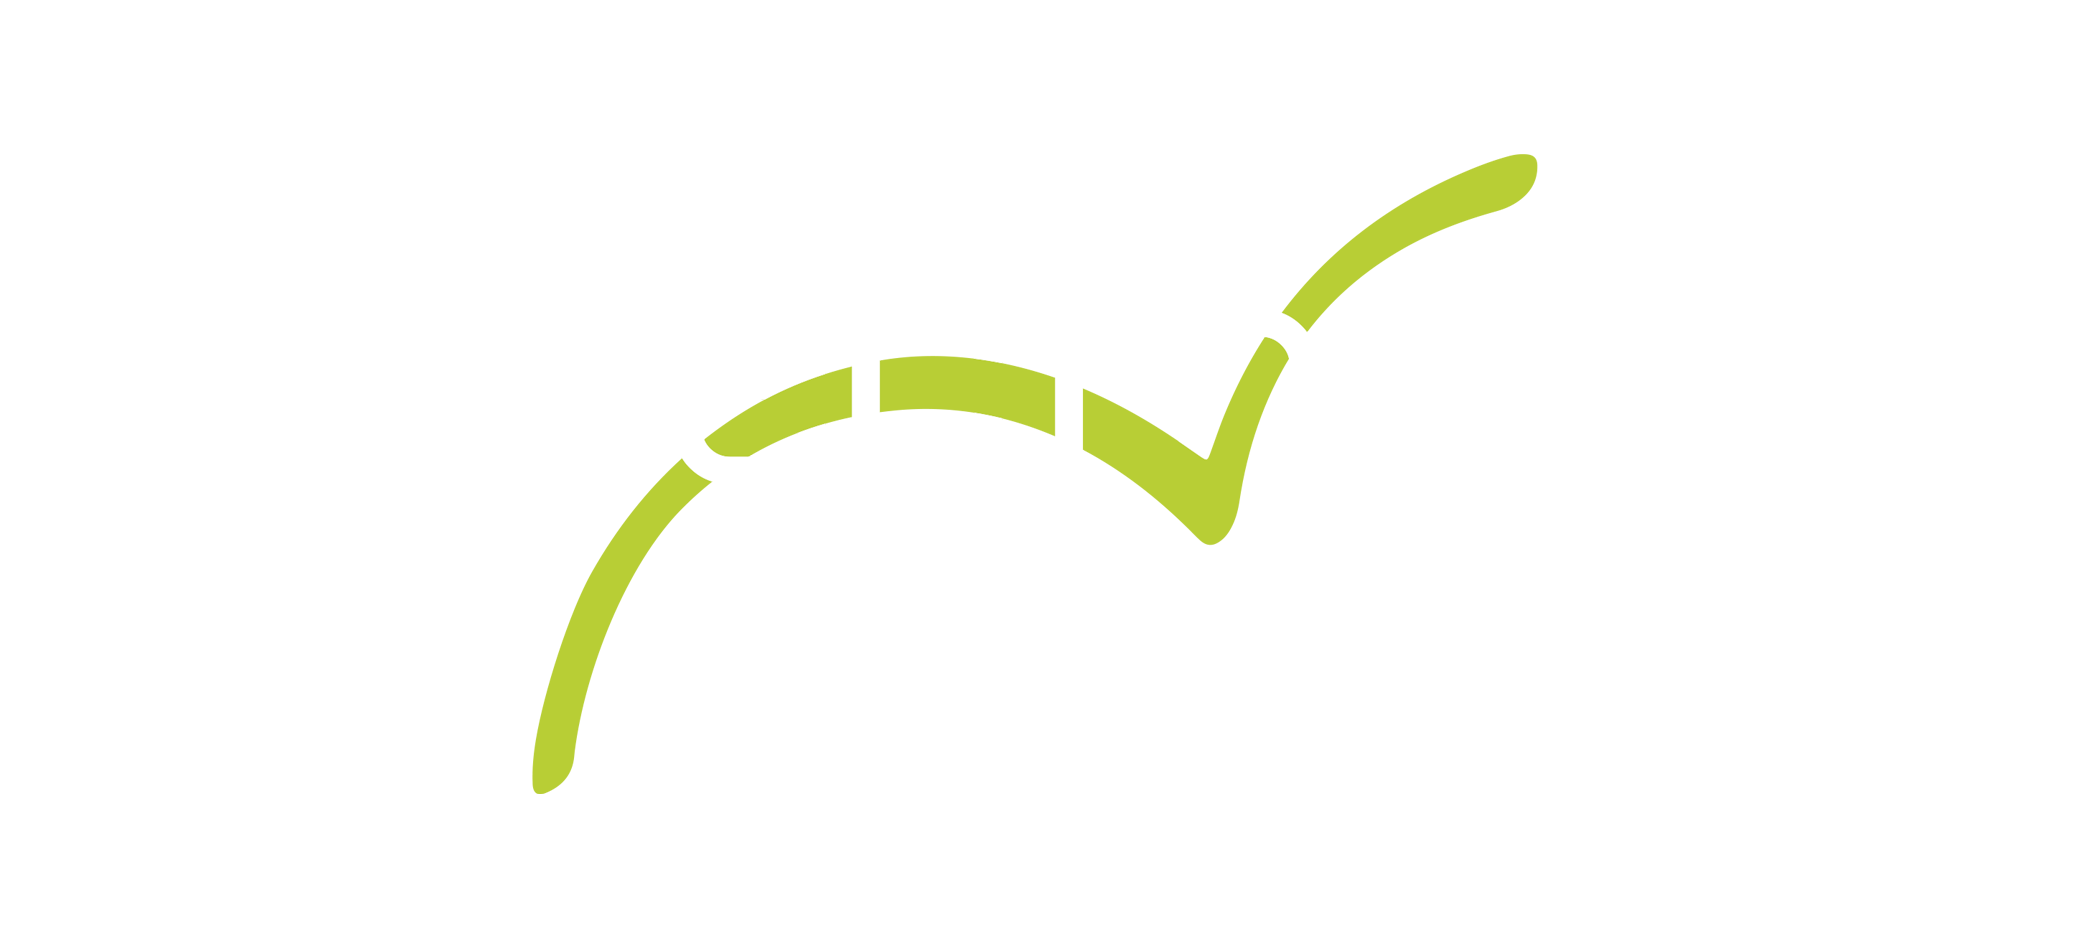 Leapfrog IoT